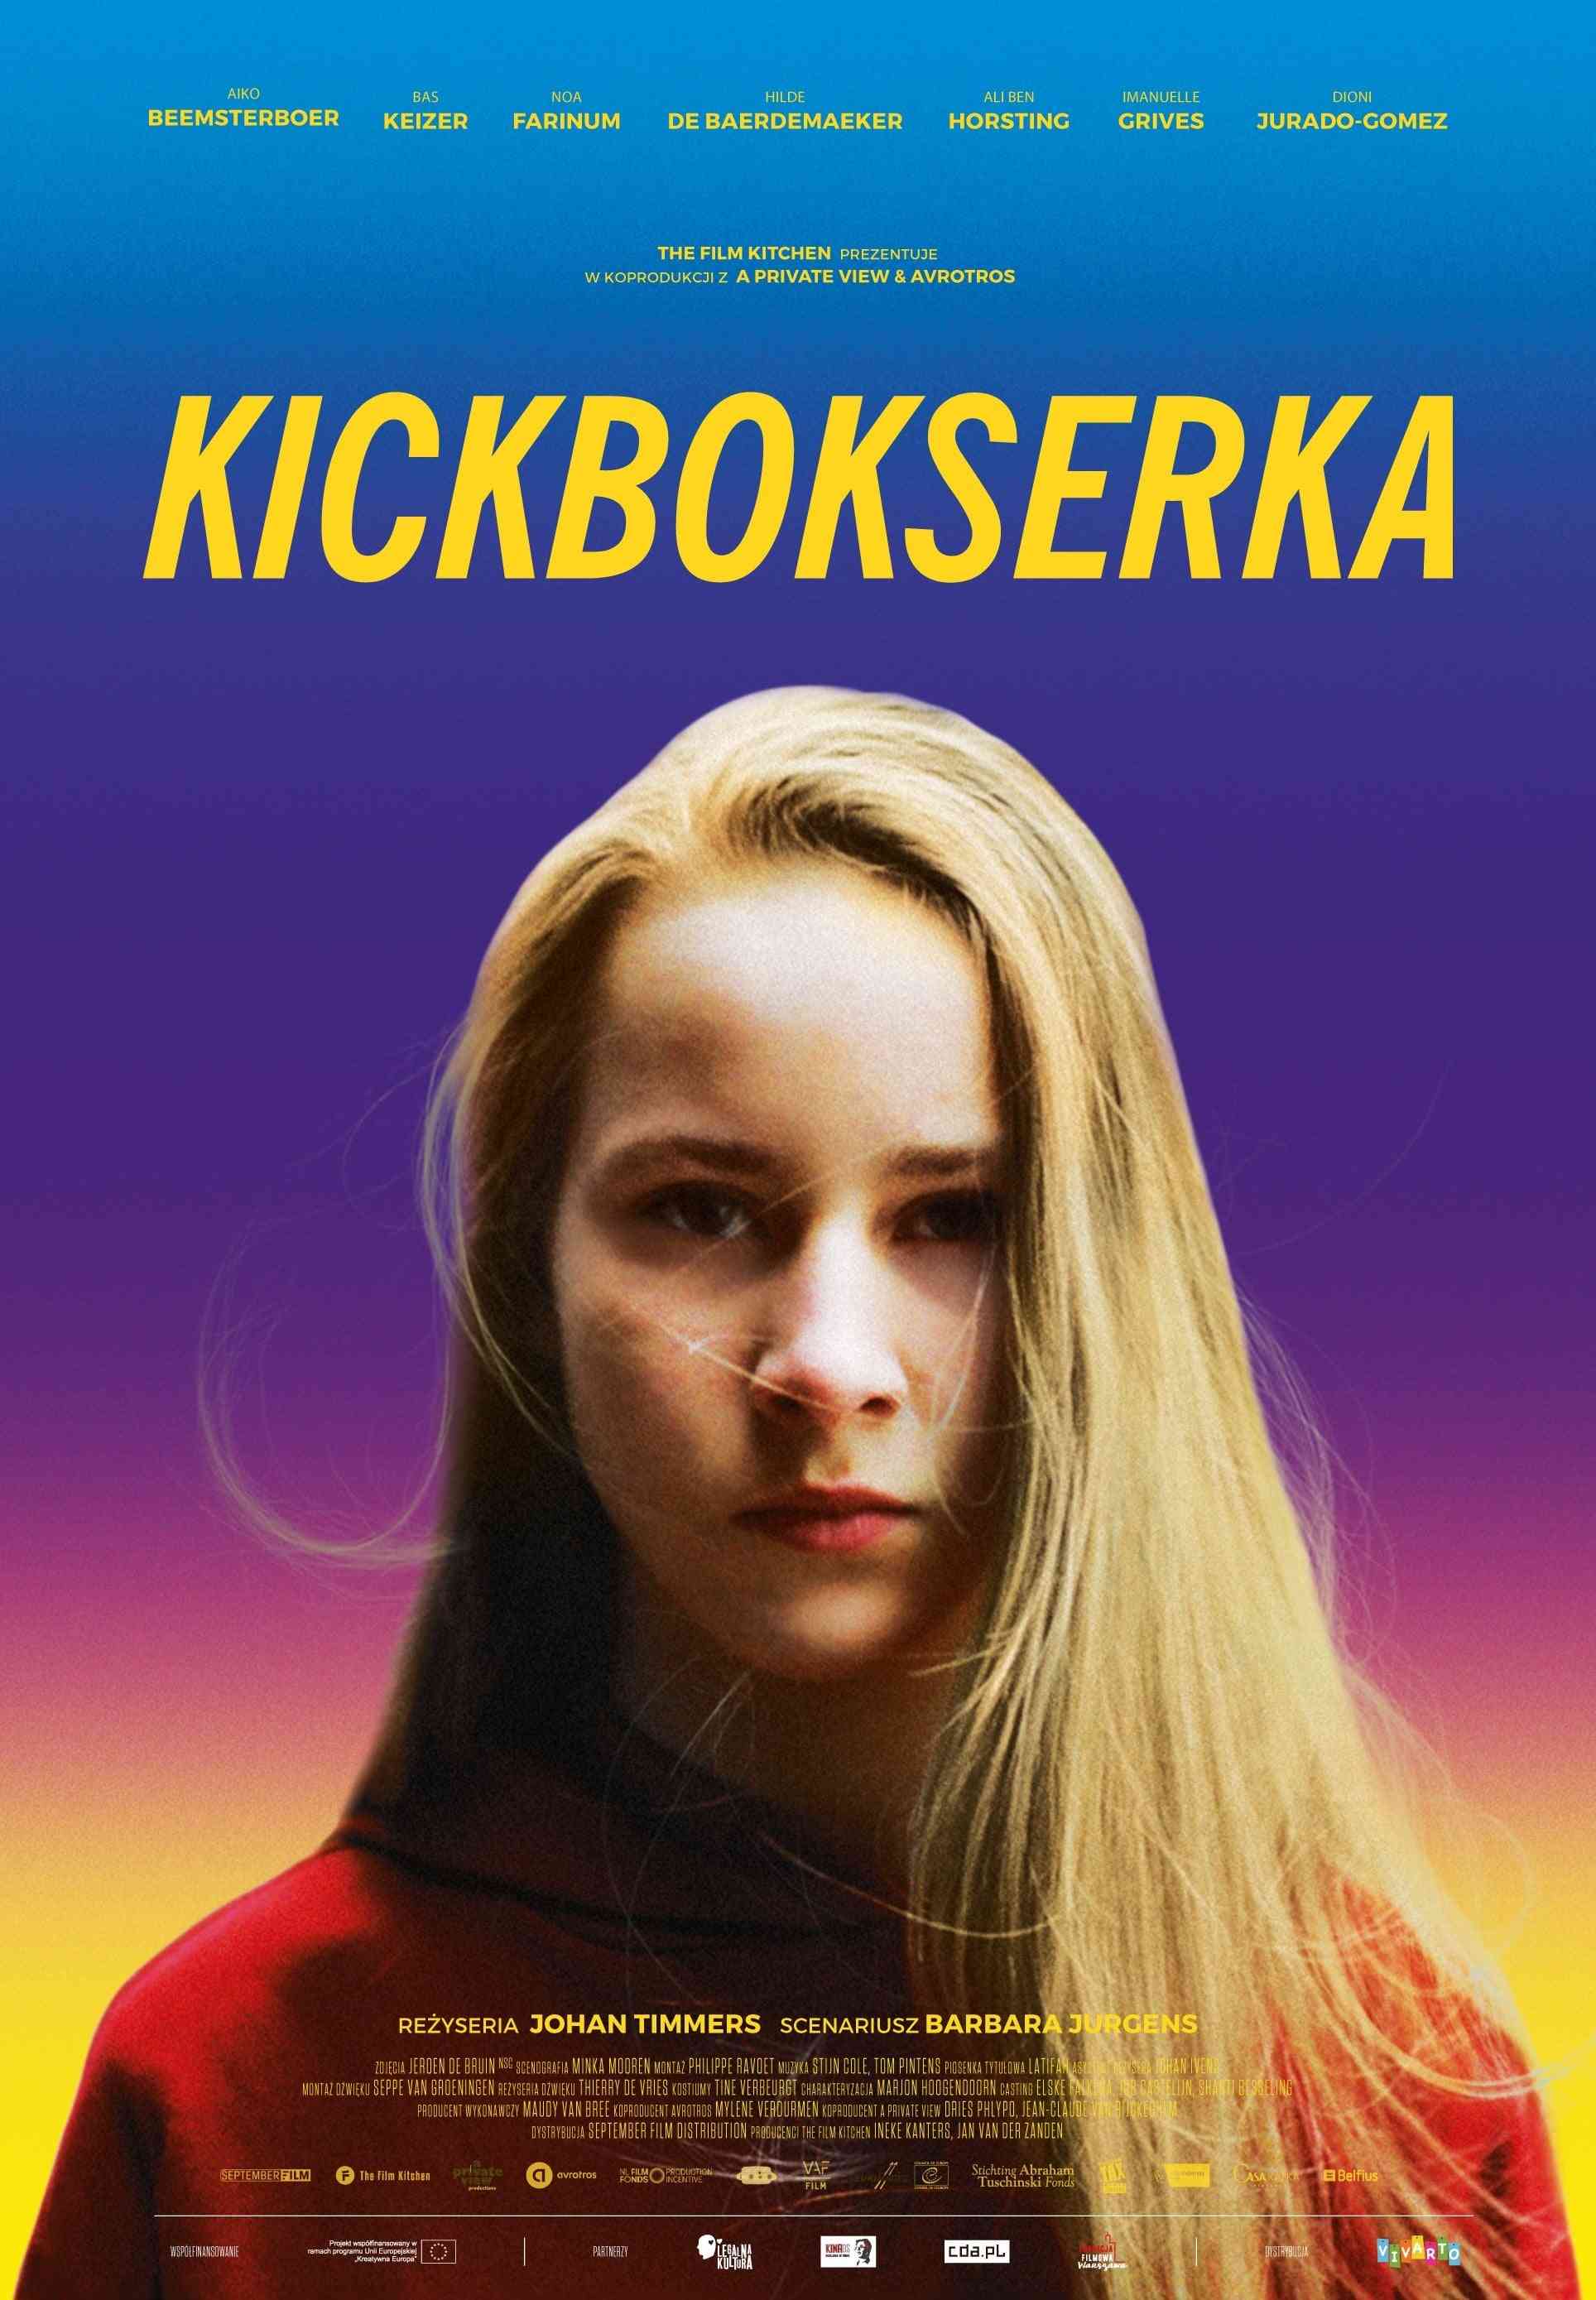 Kickbokserka  (2018),Online za darmo